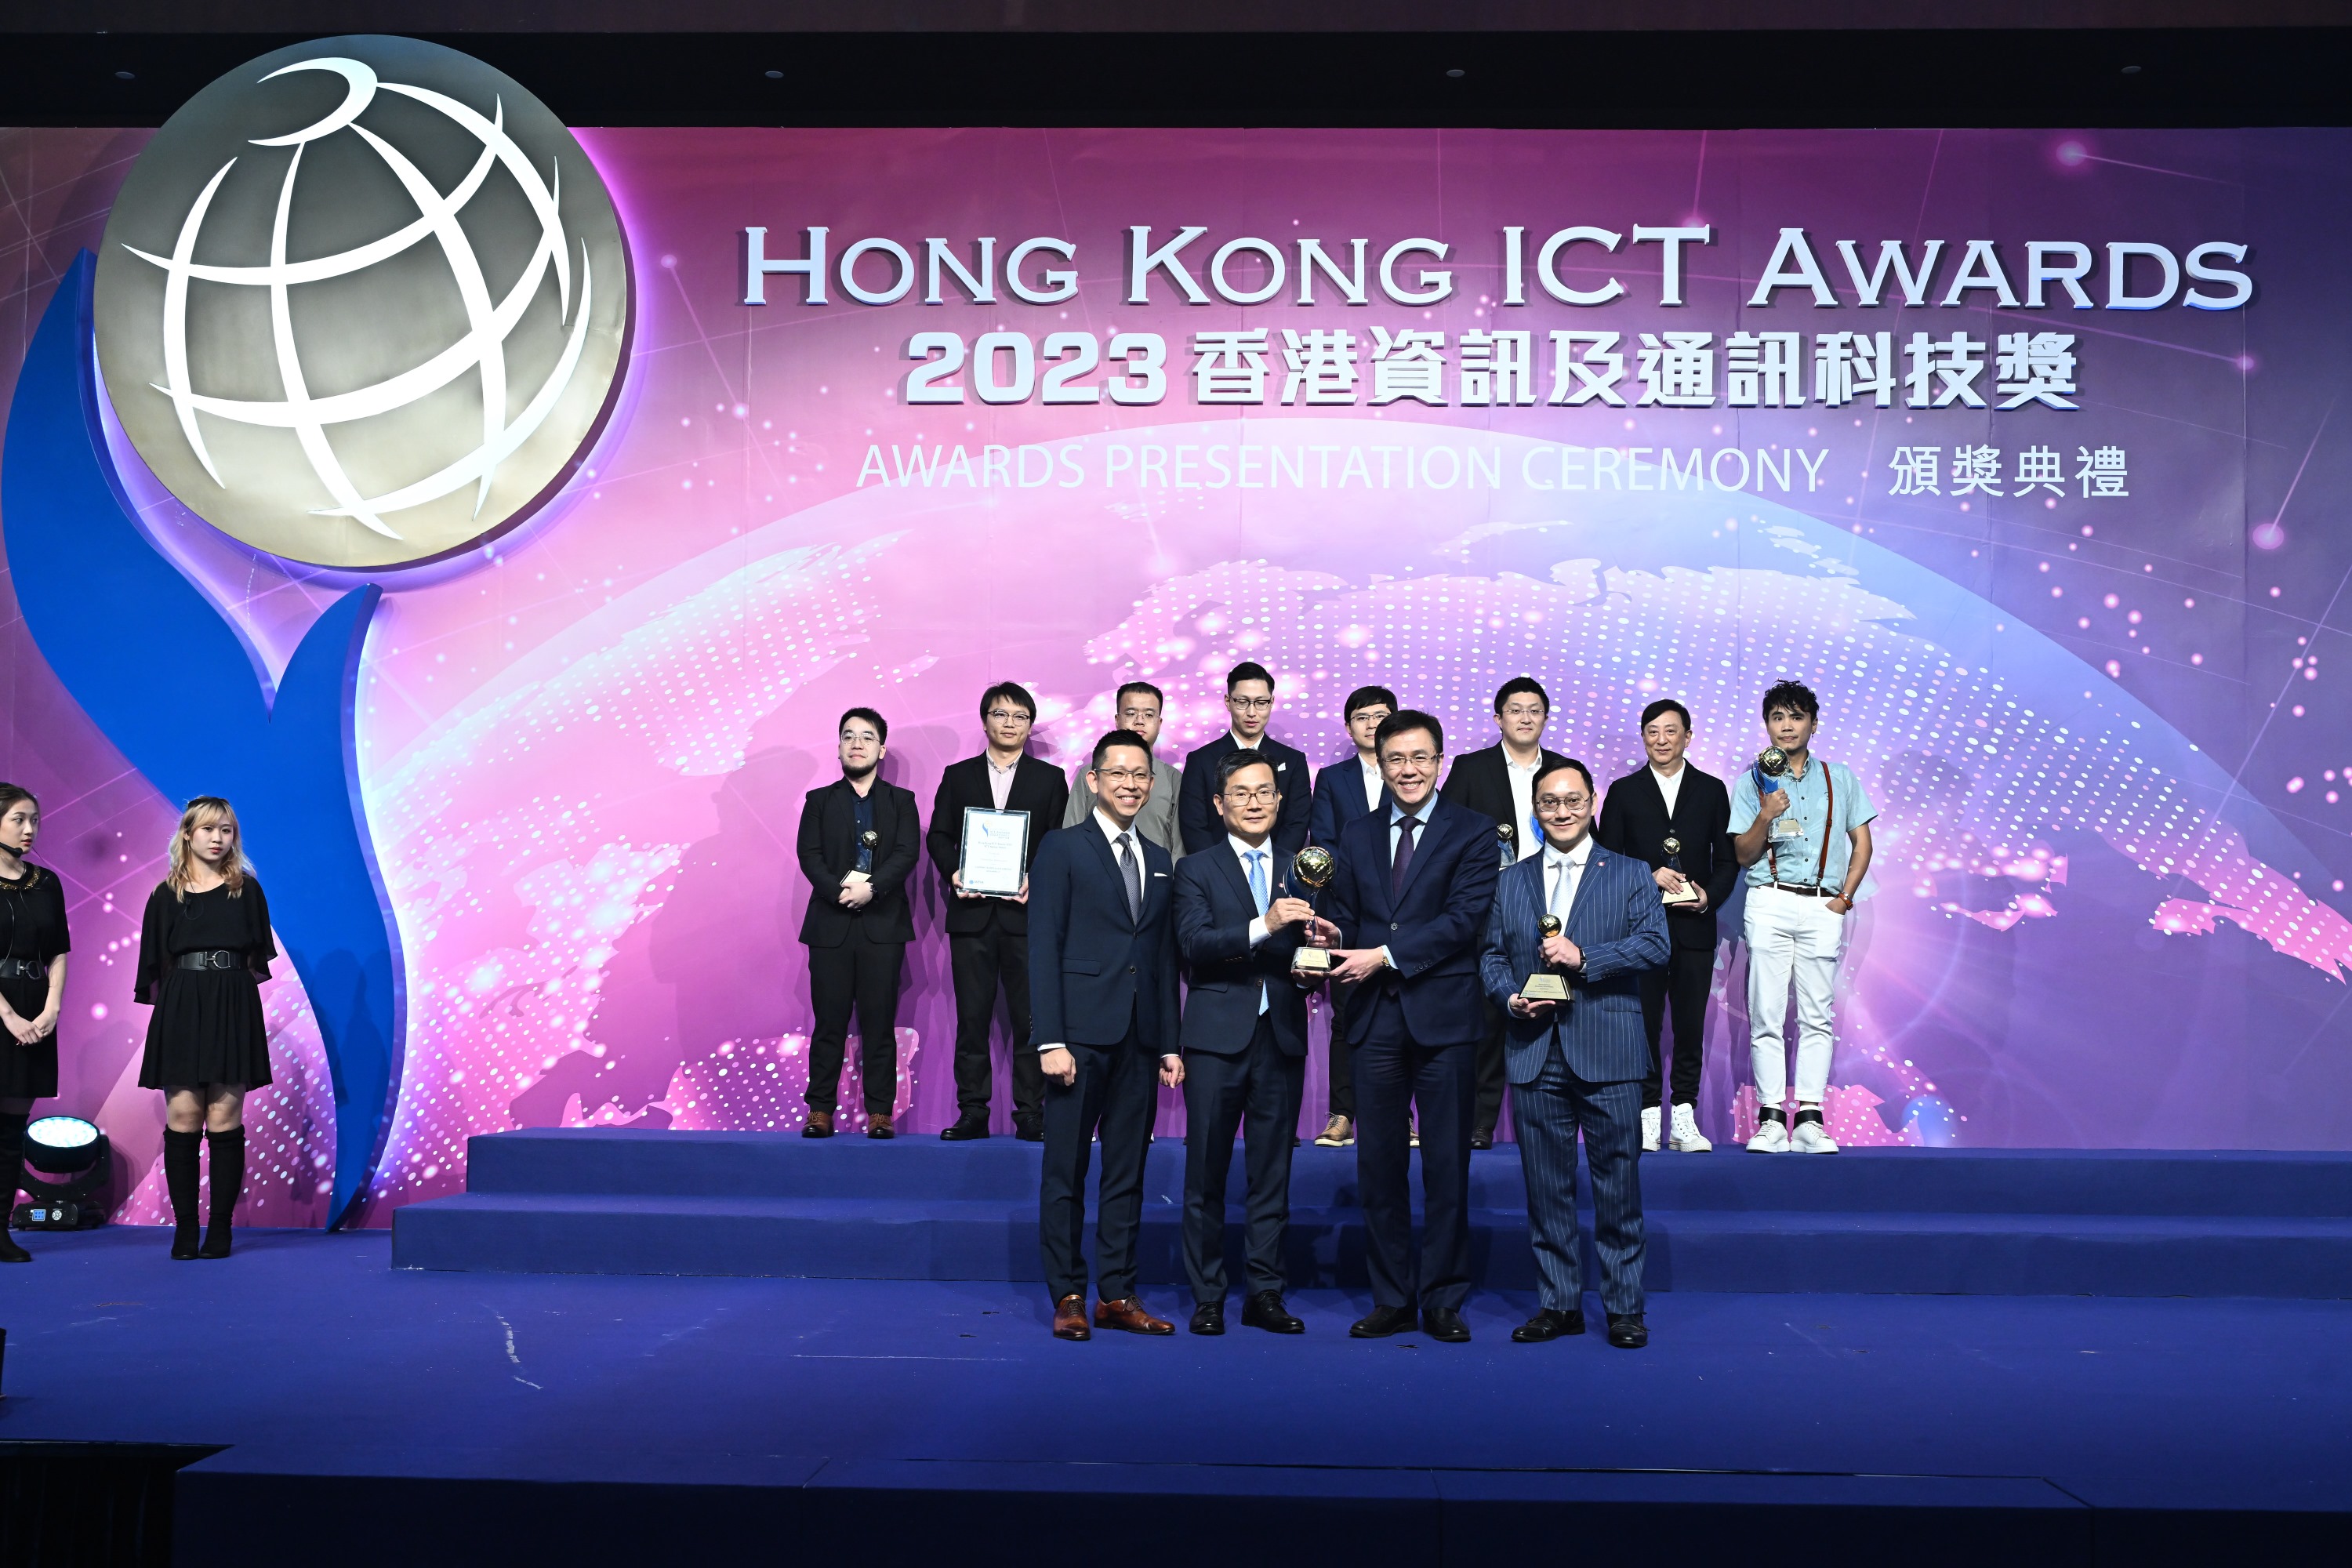 Hong Kong ICT Awards 2023 Smart Business Grand Award Winner